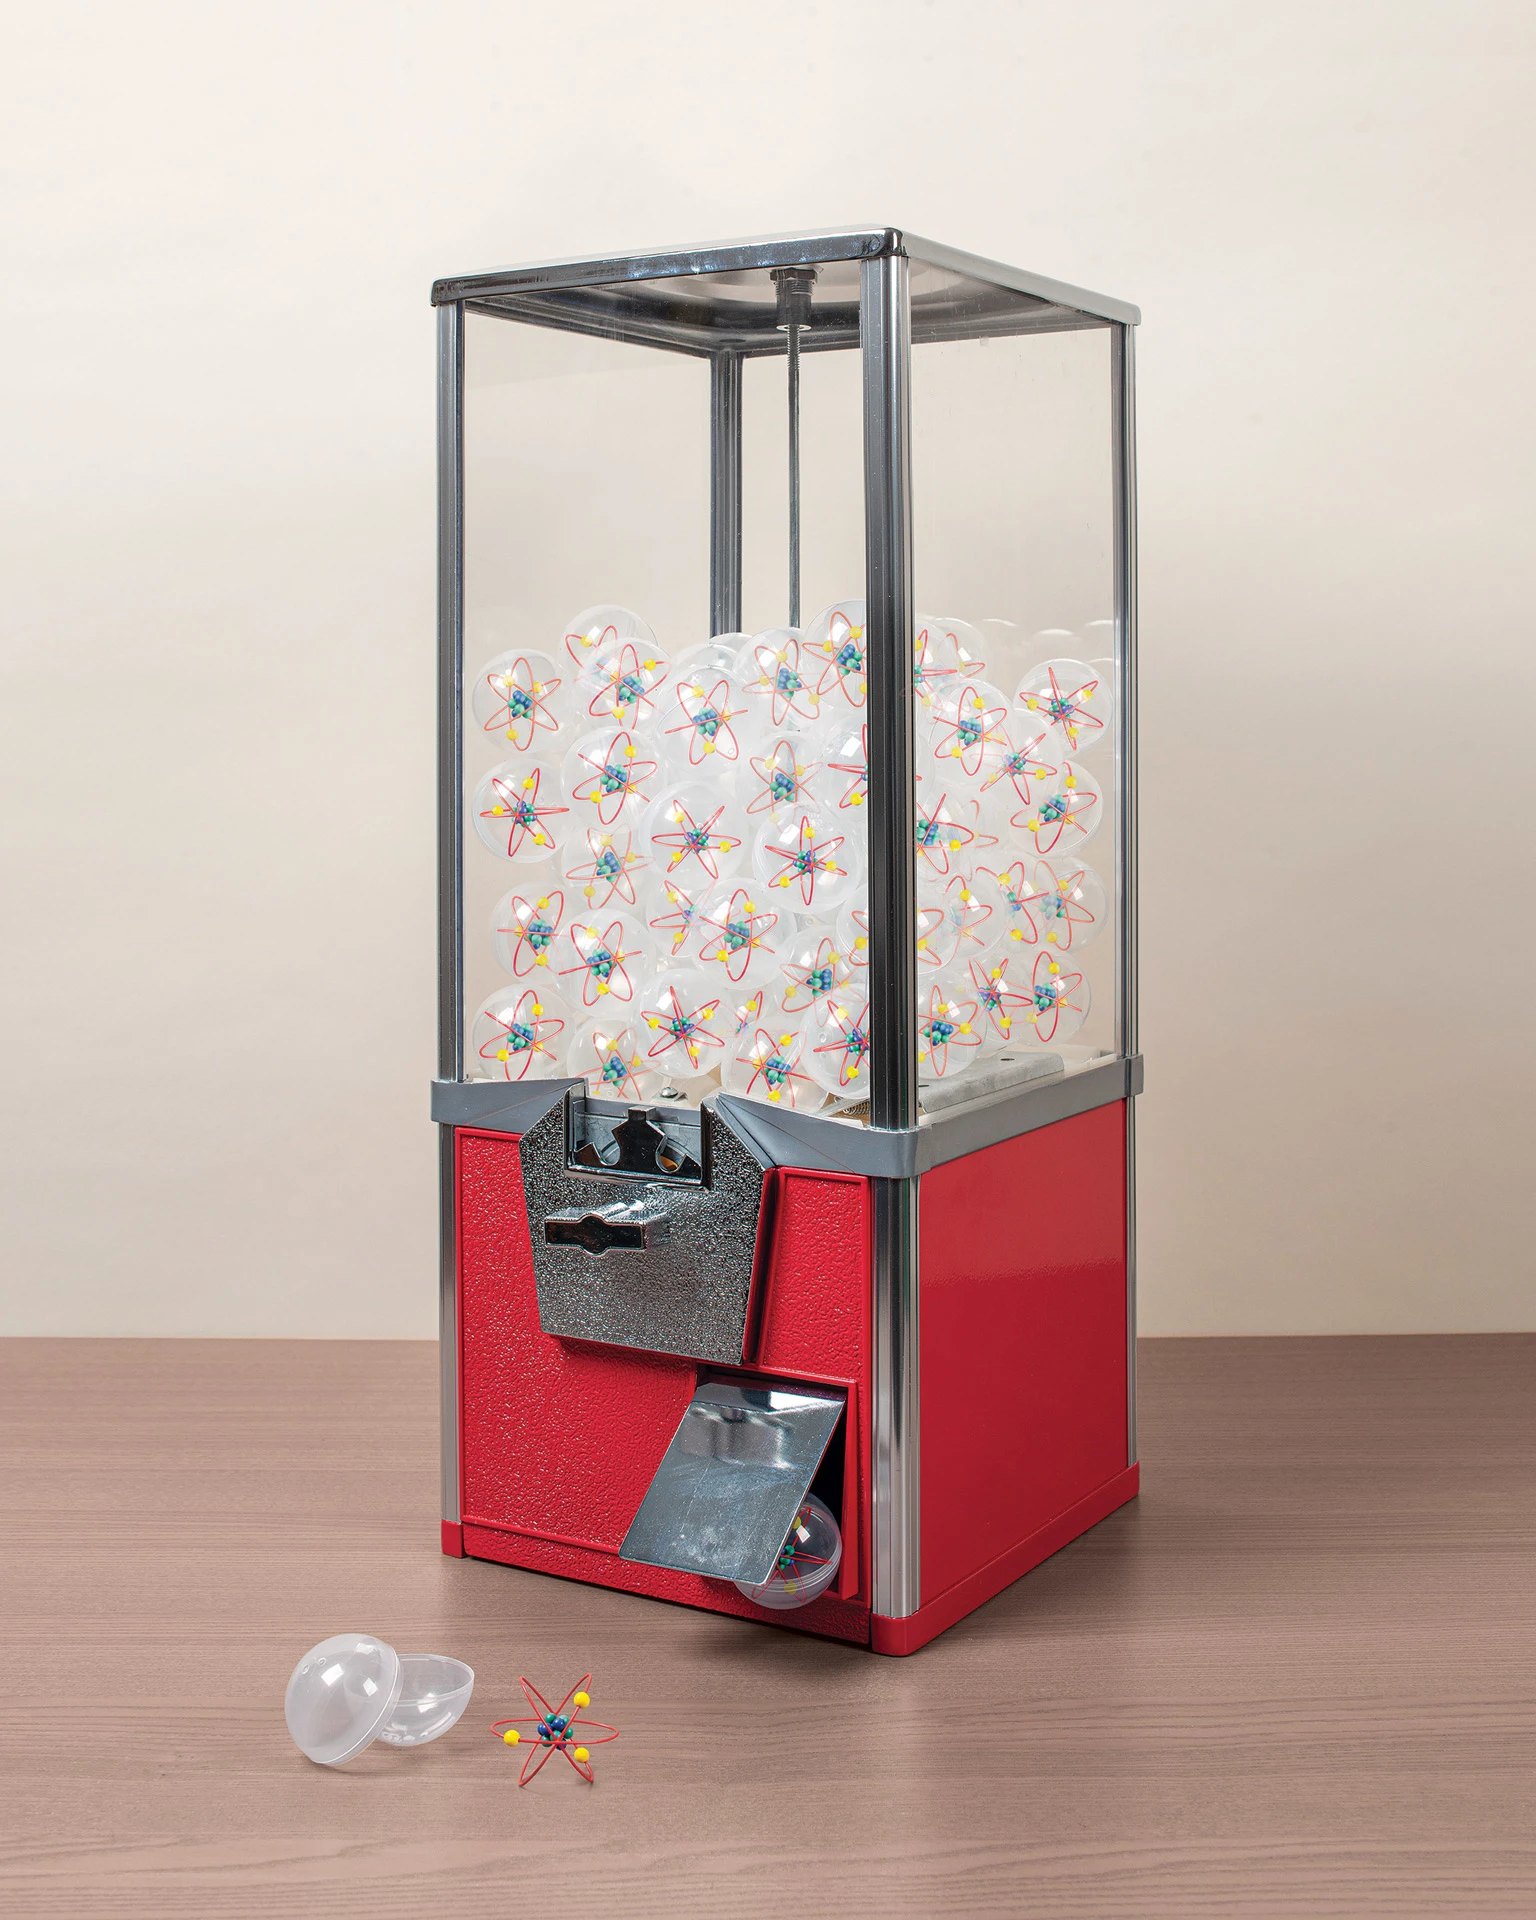 The MINI POPCORN MACHINE  Smallest Popcorn Maker in the World